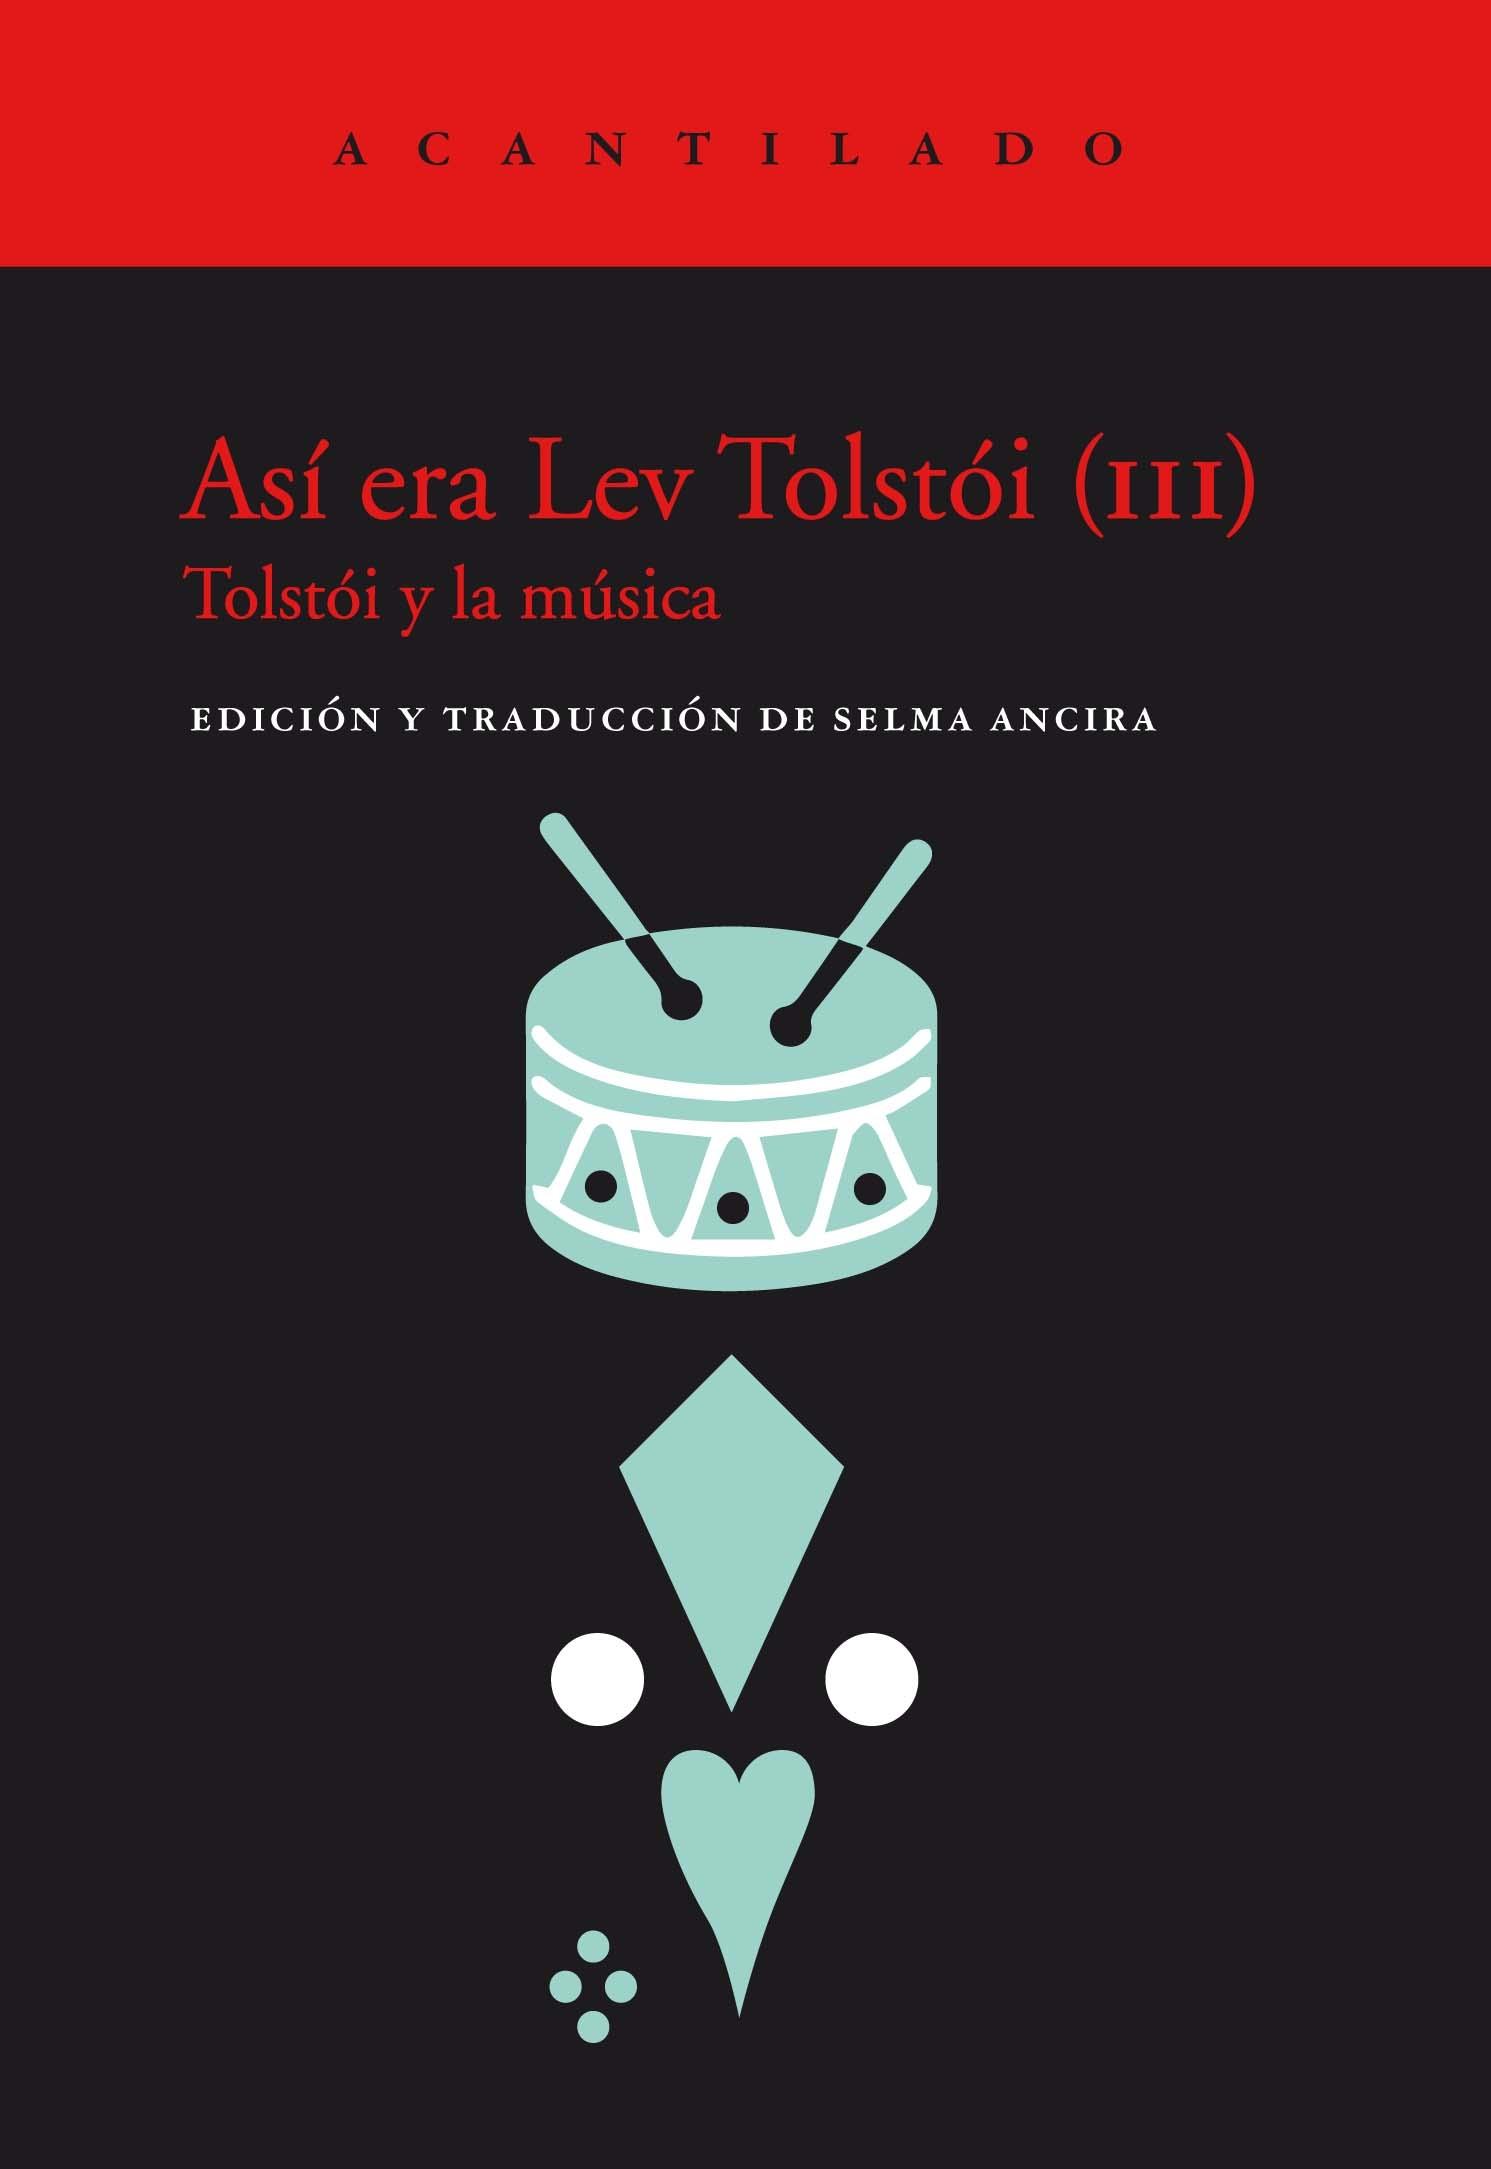 Así era Lev Tolstói (III) "Tolstoi y la música"